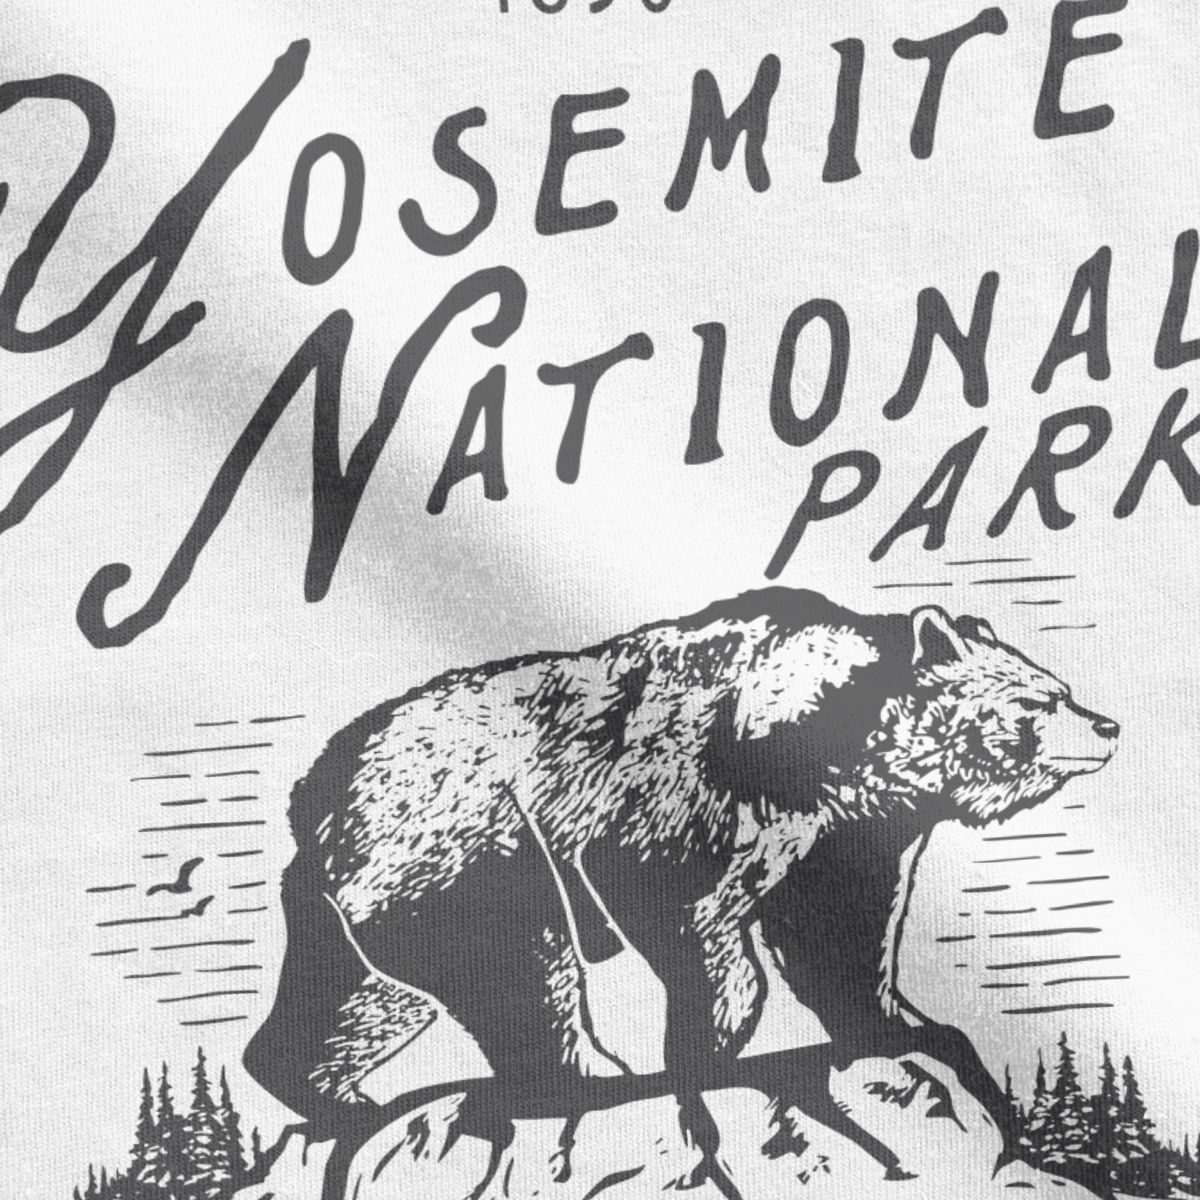 Yosemite National Park Bear T-Shirt